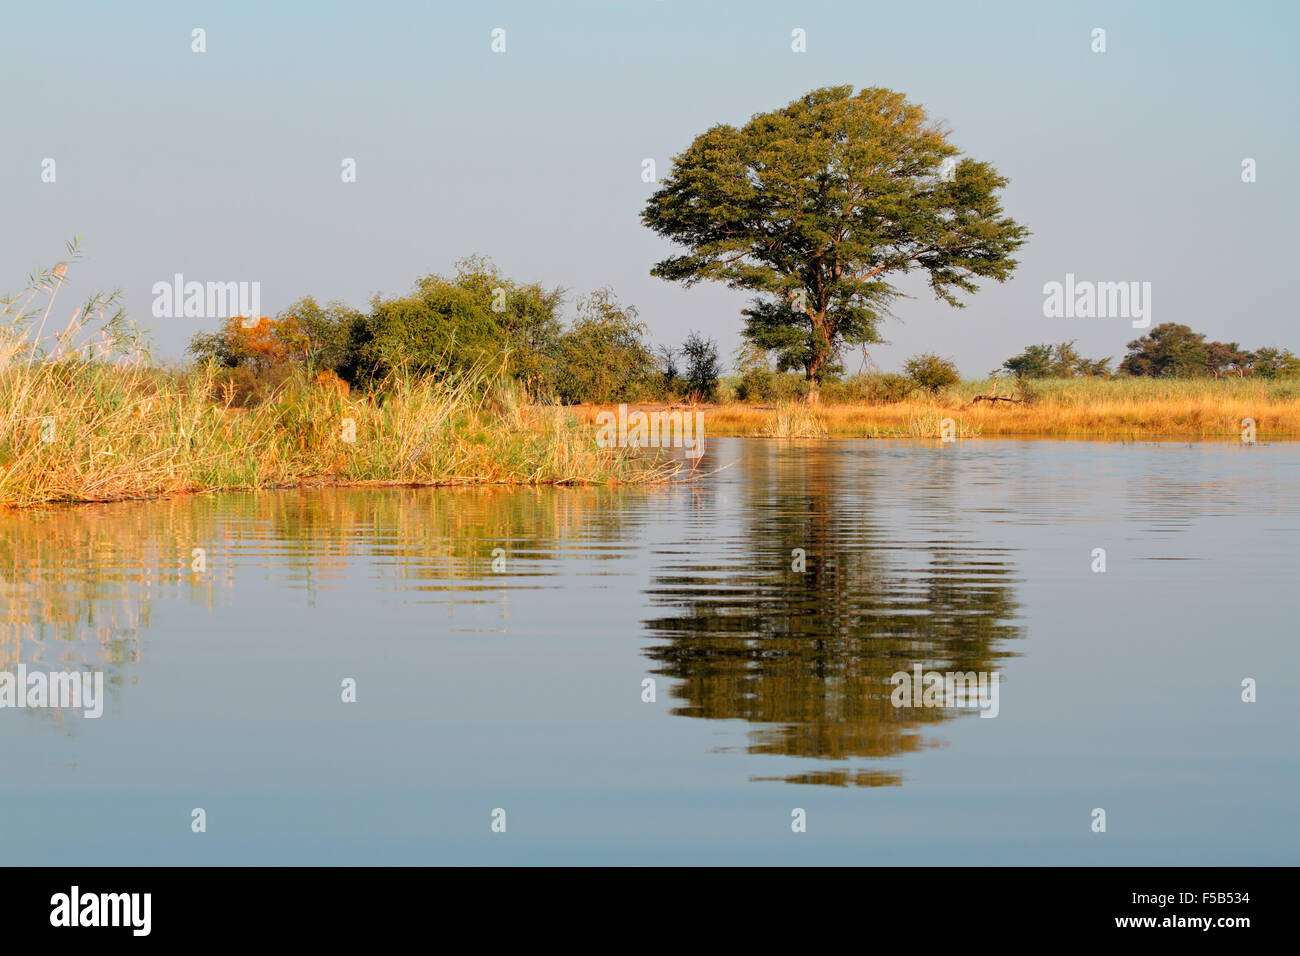 Afrikanische Landschaft mit einer Akazie spiegelt sich im Wasser, Kwando Fluss, Namibia Stockfoto